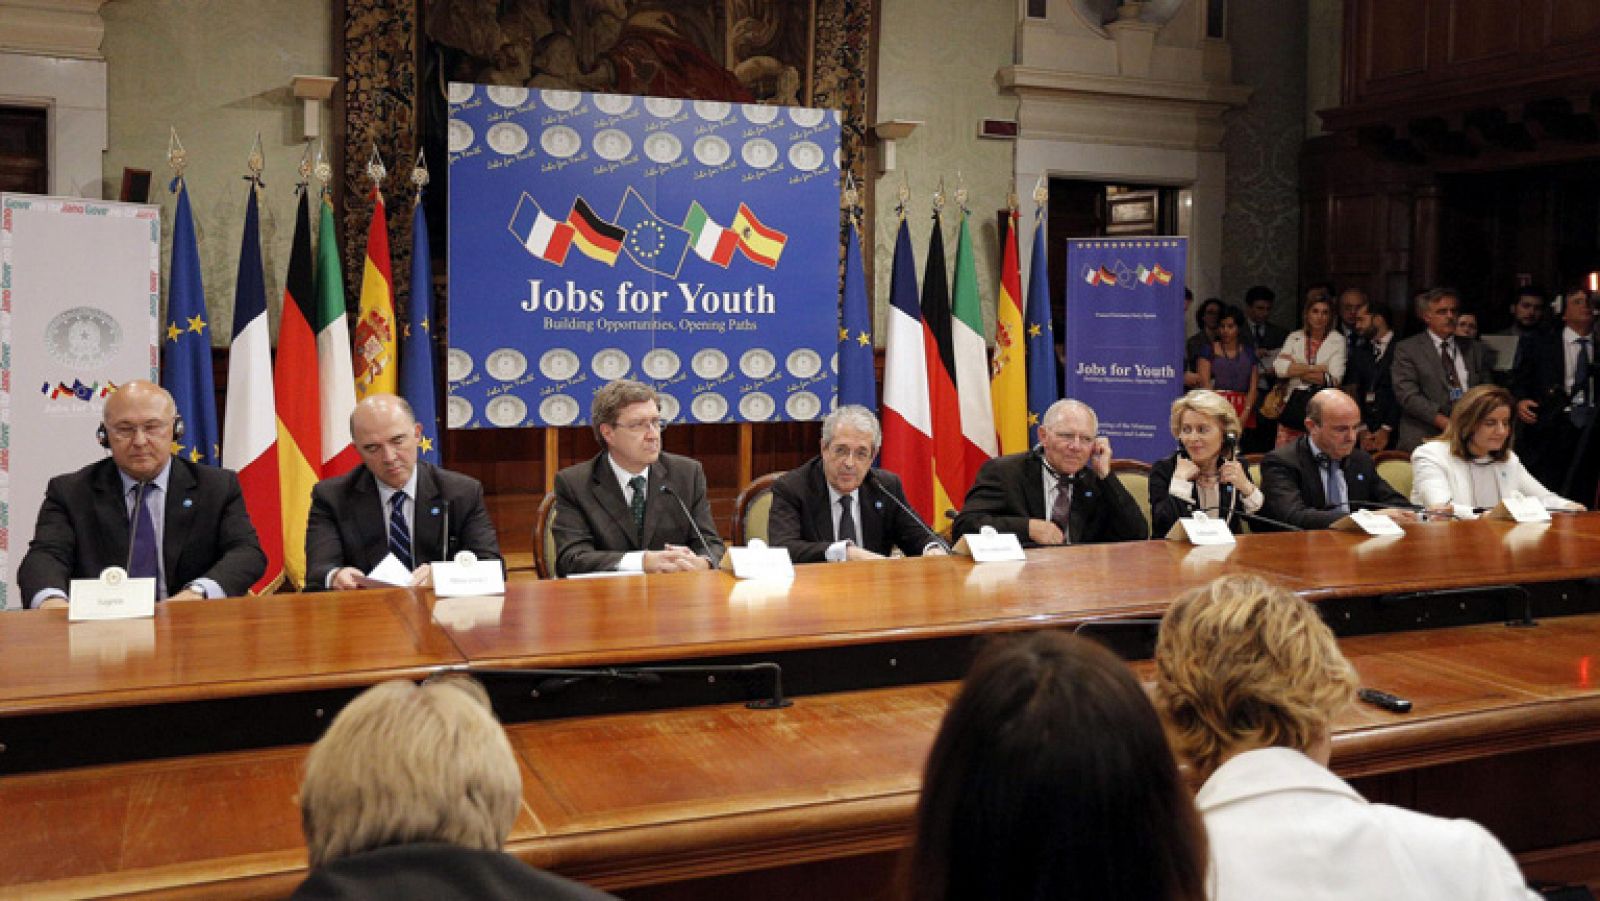 Telediario 1: Alemania, Francia, España e Italia instan a la movilización del fondo de empleo juvenil de la UE | RTVE Play